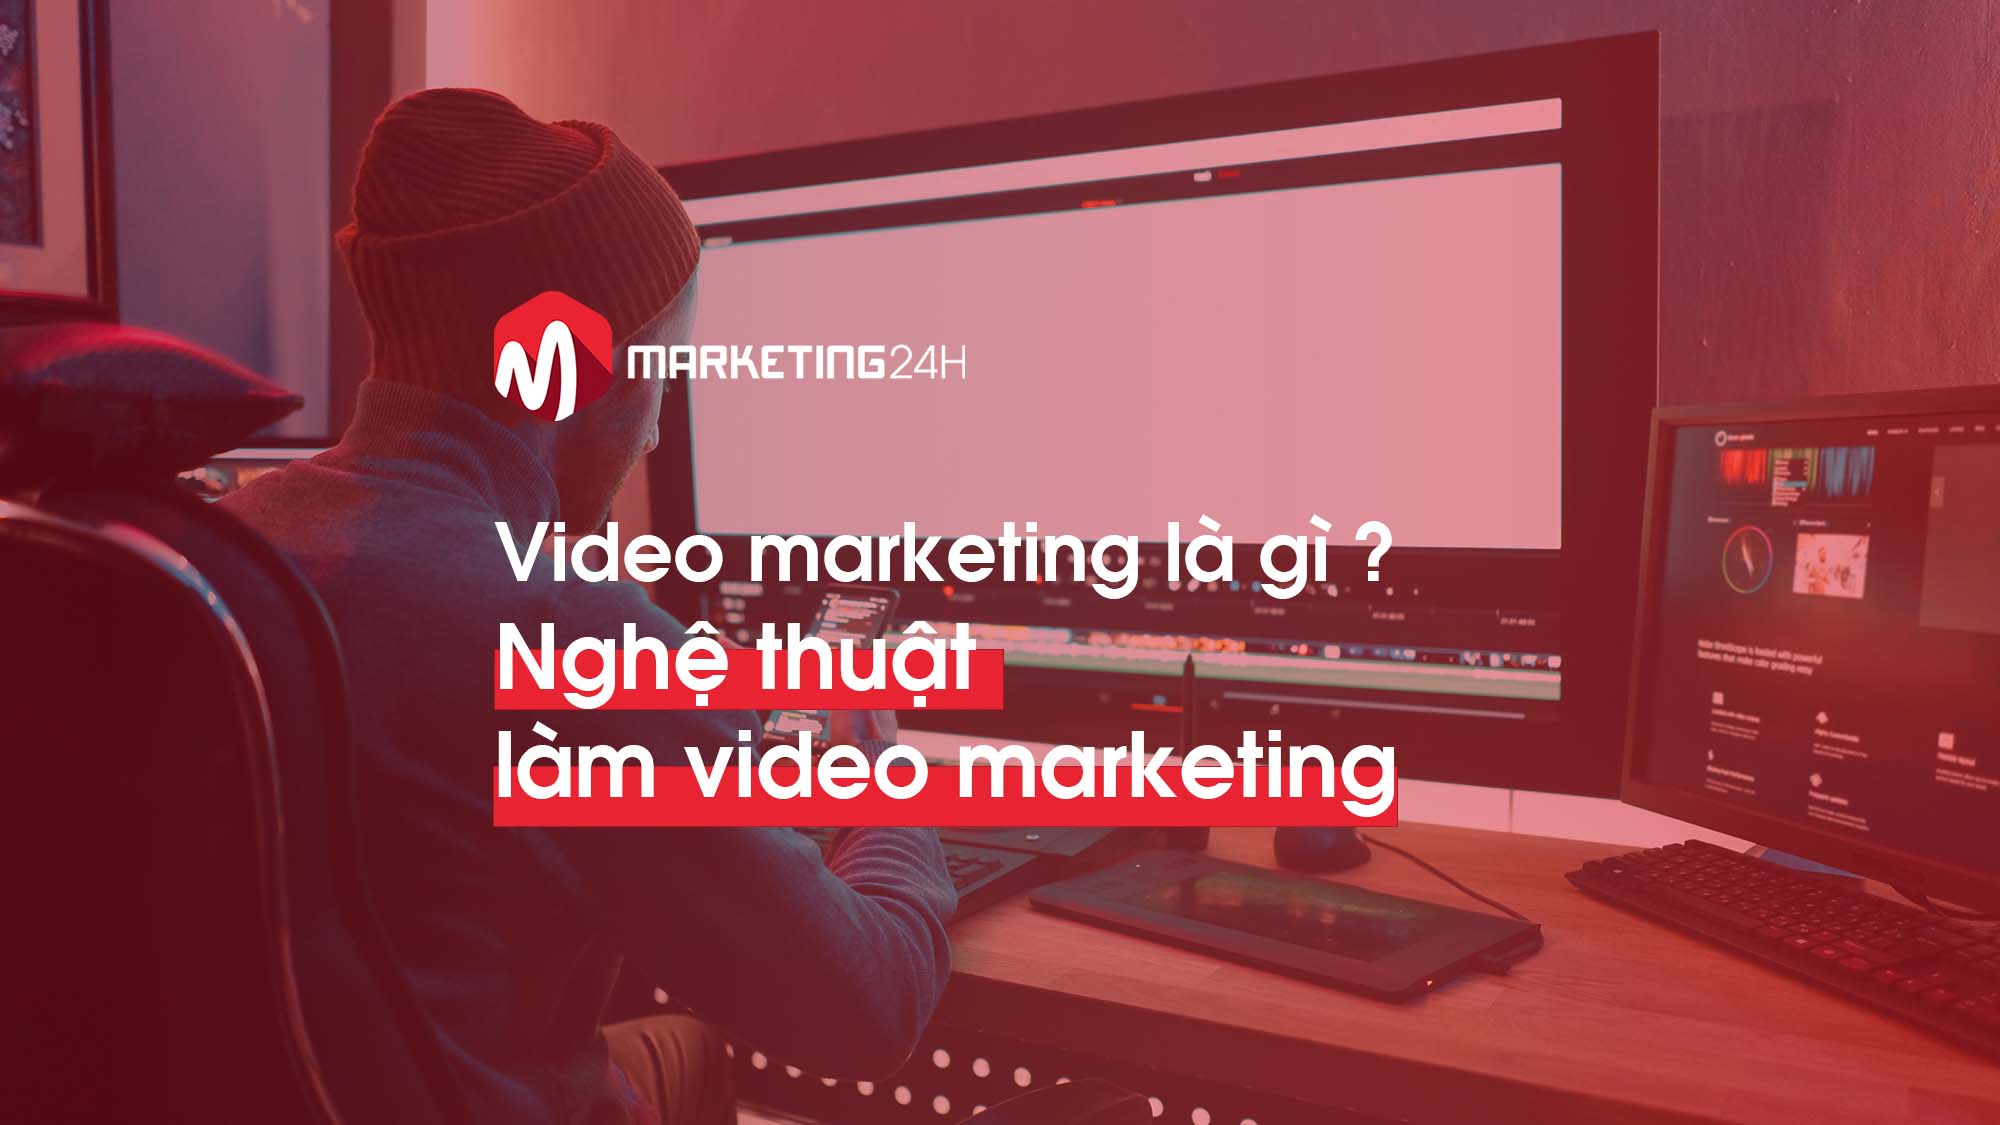 Video Marketing là gì? Sử dụng thành công là cả một nghệ thuật